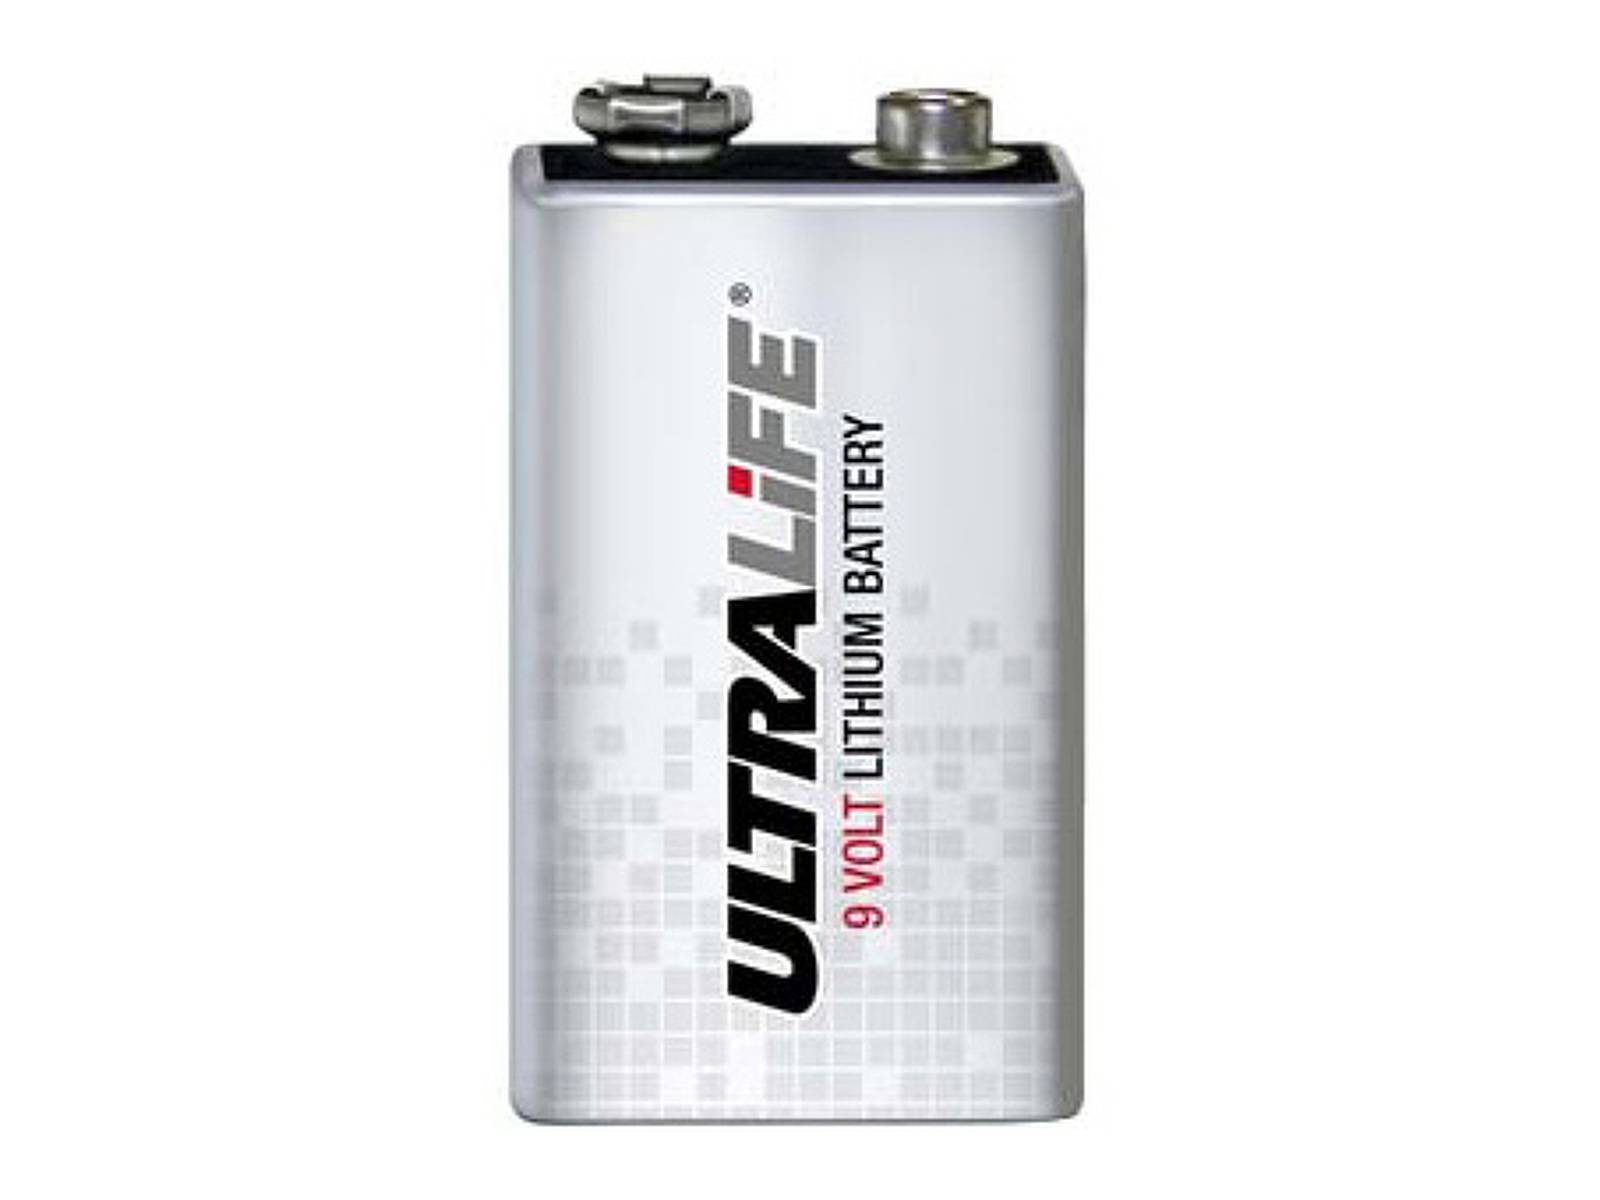 Rauchmelder Lithium kaufen für Lithium CR-V9, Ultralife Batterie Typ 9V, 10 Jahres